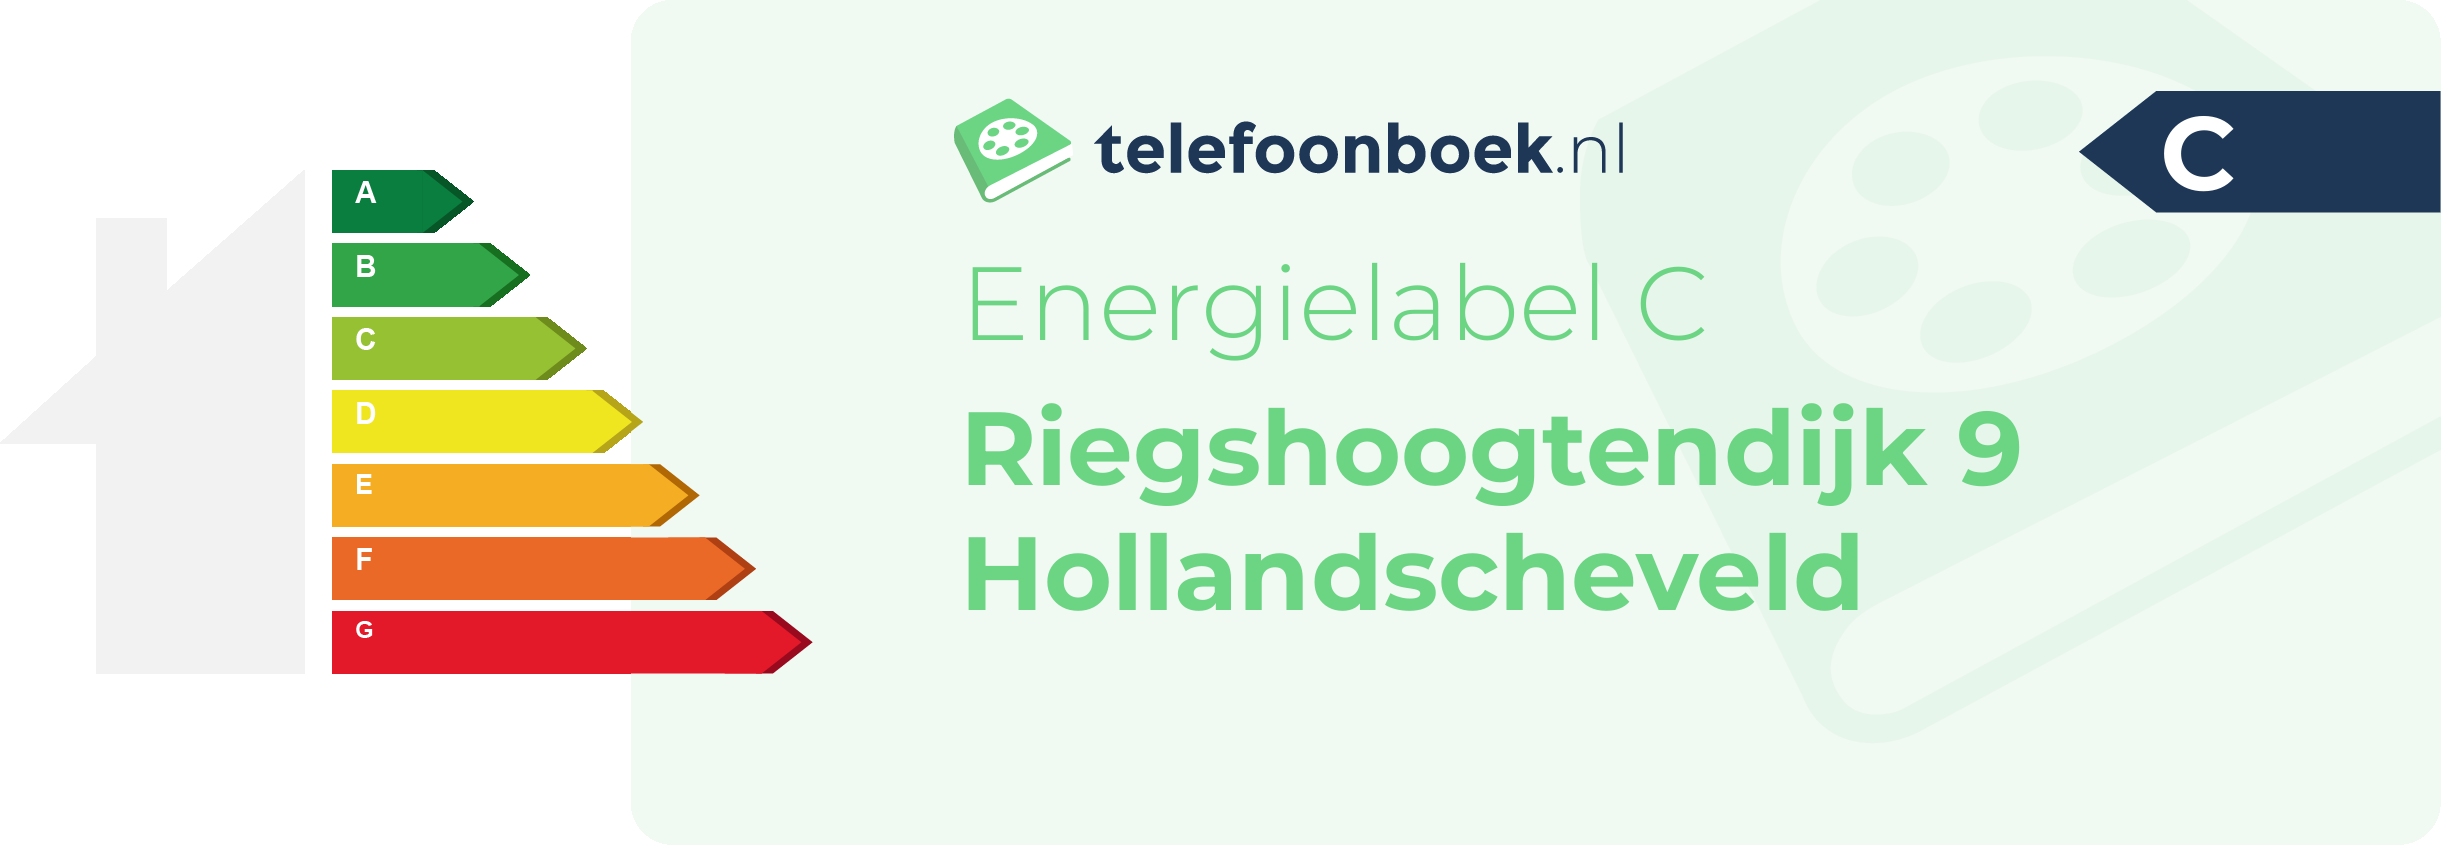 Energielabel Riegshoogtendijk 9 Hollandscheveld